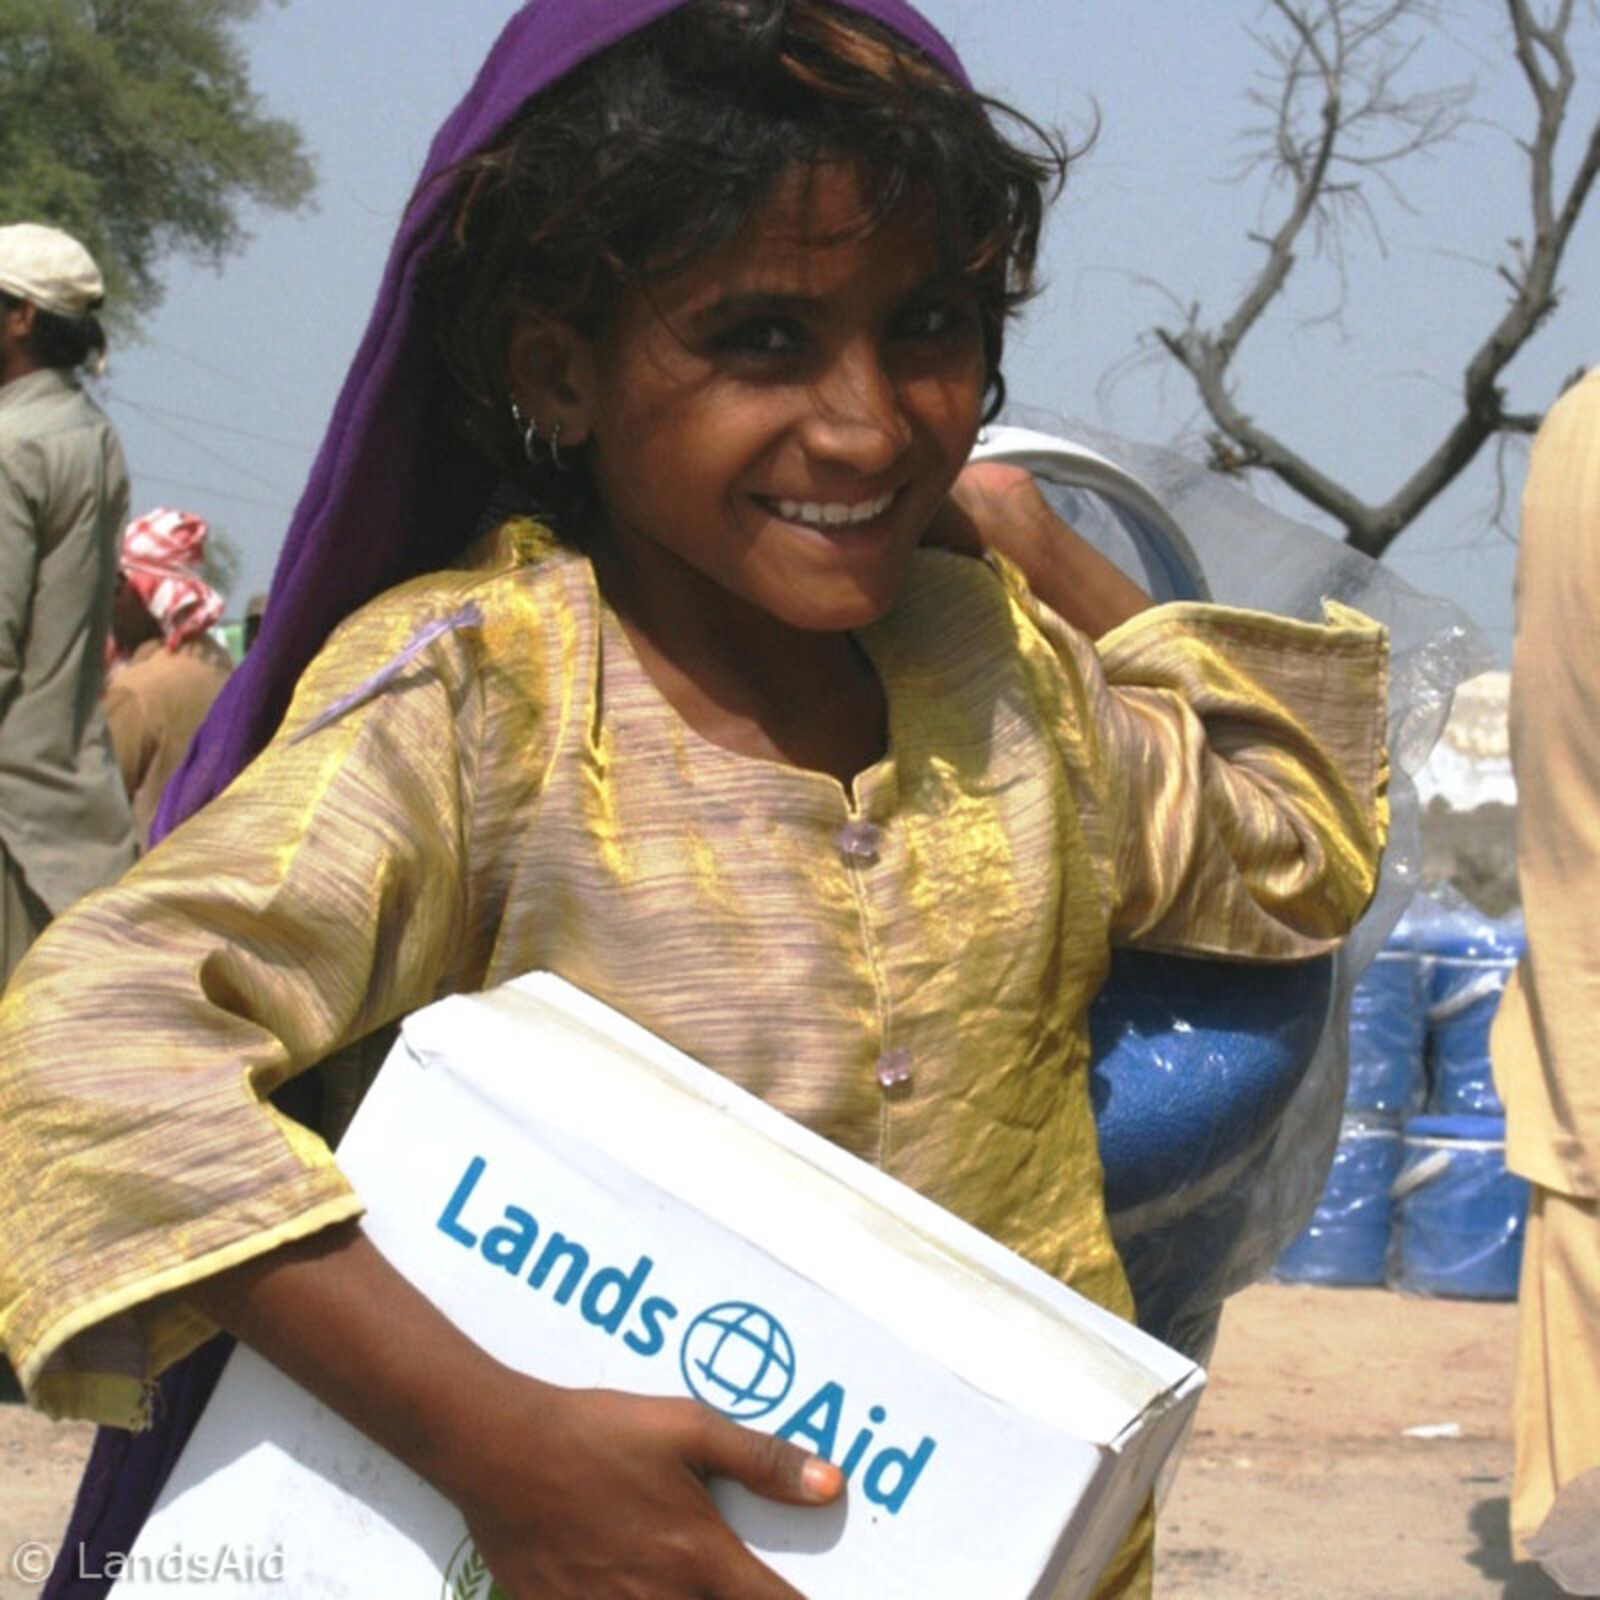 LandsAid hilft überall dort, wo Hilfe benötigt wird